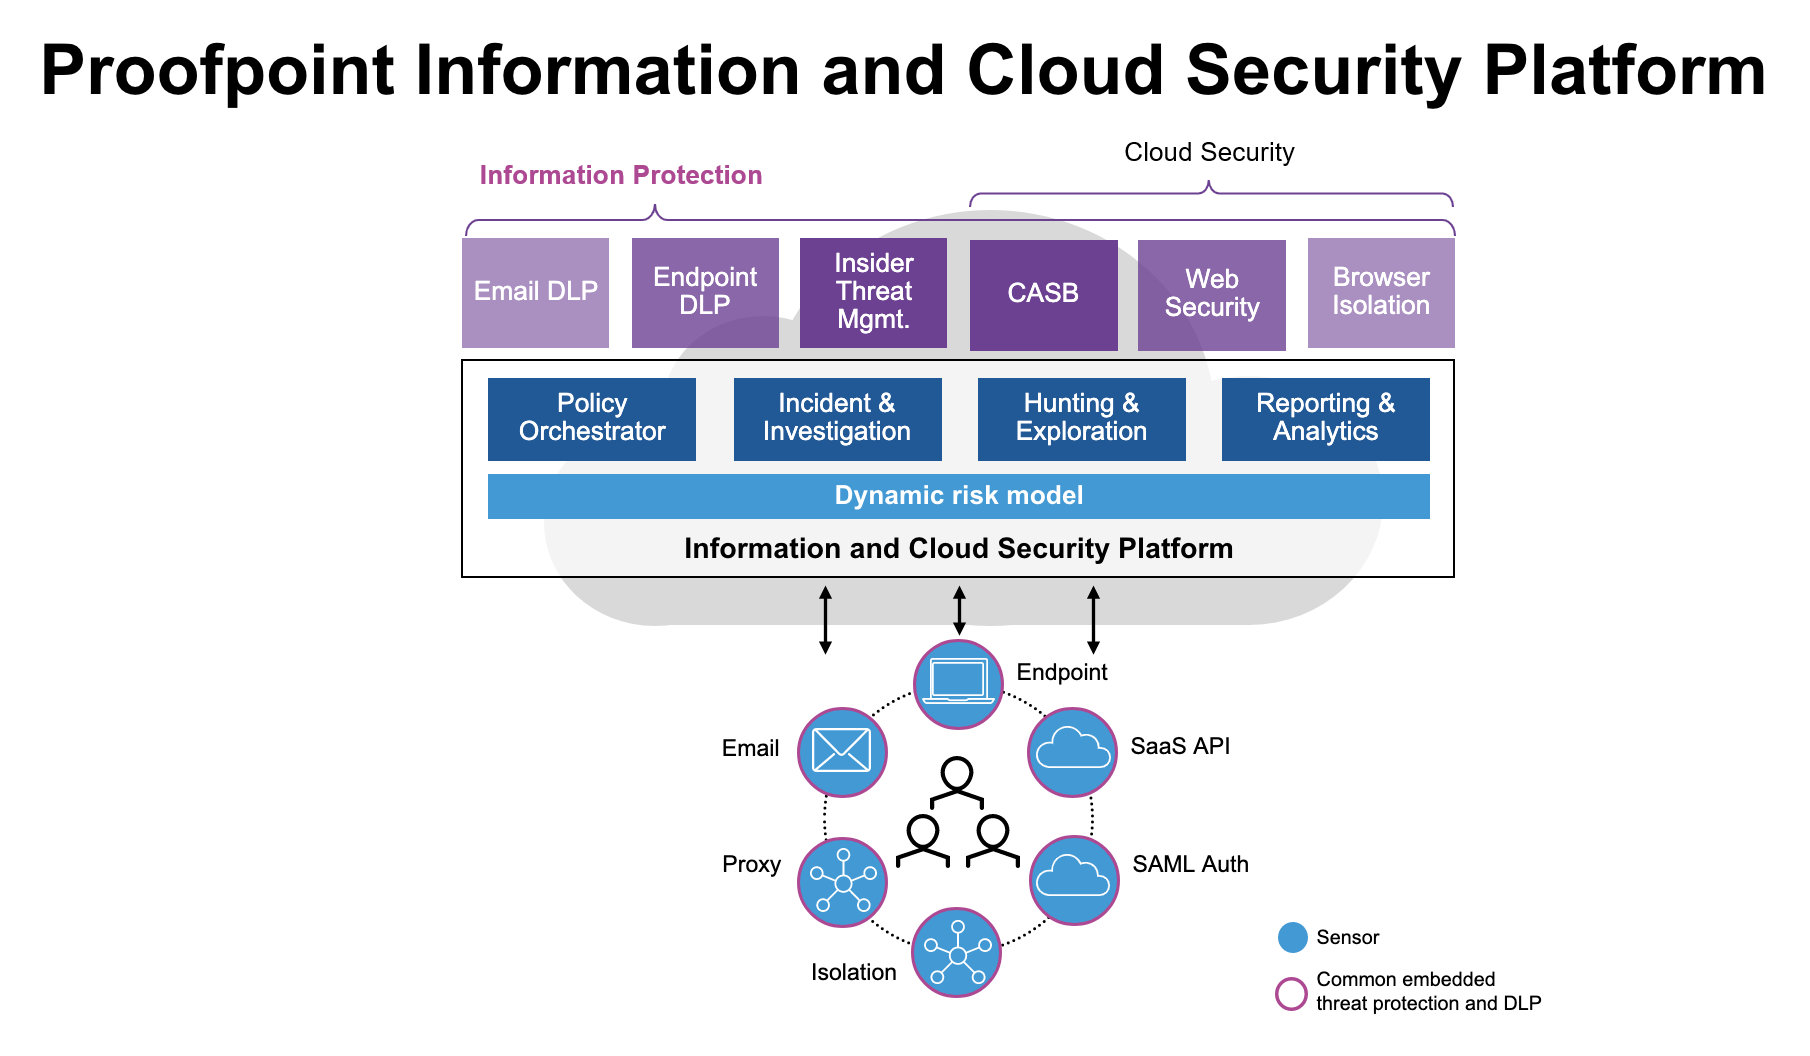 La completa plataforma Information and Cloud Security de Proofpoint brinda funciones potentes para reducir el riesgo de la organización centrado en personas